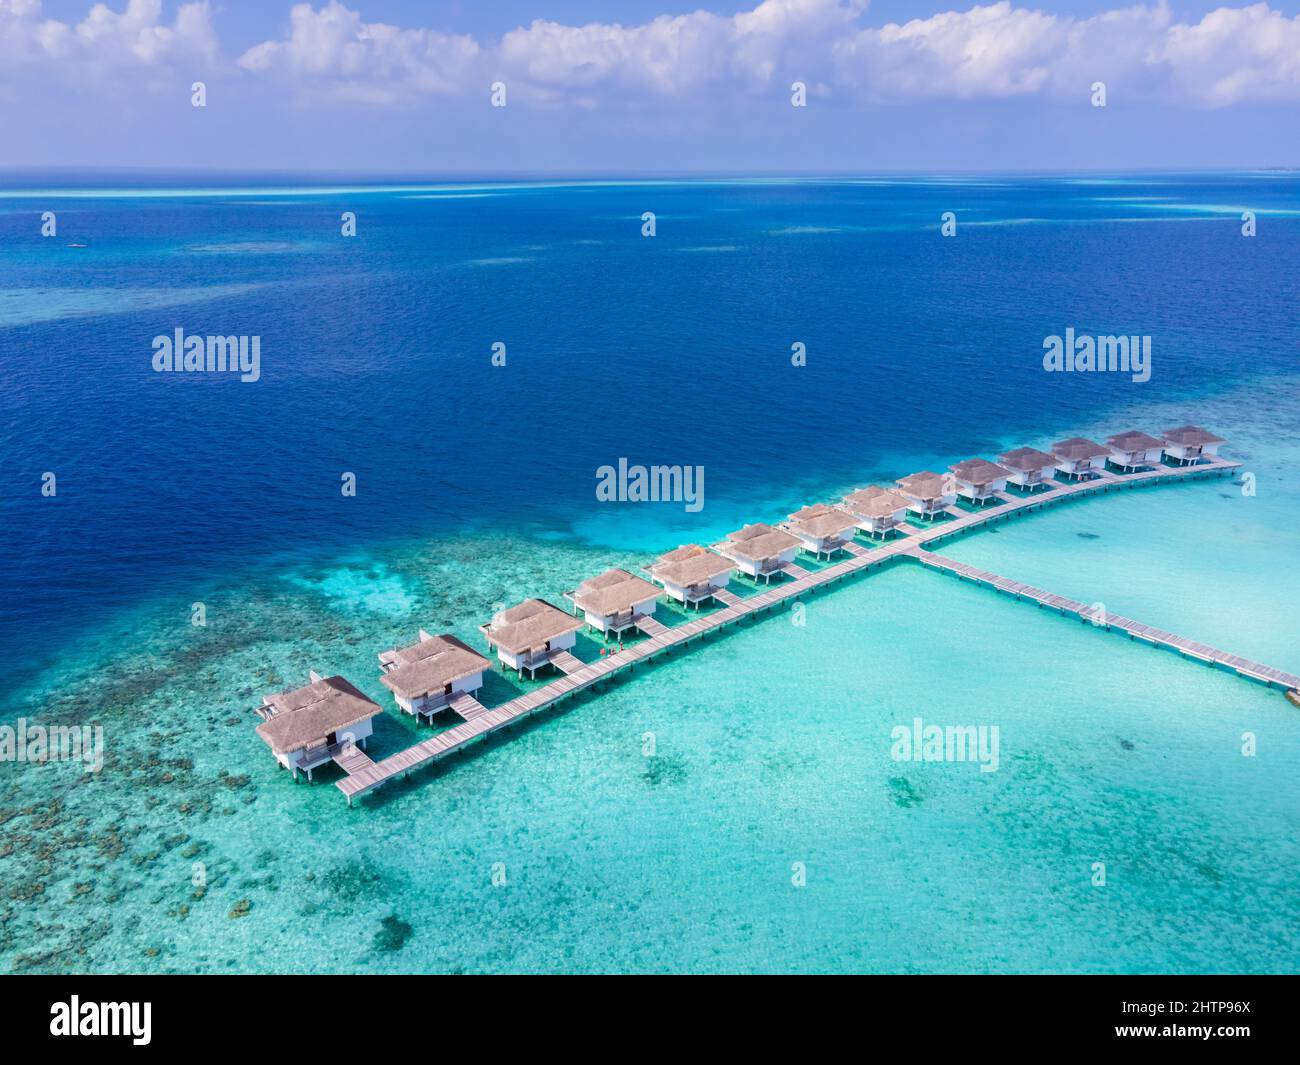 Complexe de luxe avec villas sur l'île de l'atoll tropical pour vacances à la plage voyage de vacances et lune de miel. Hôtel de luxe aux Maldives ou Caribbea Banque D'Images